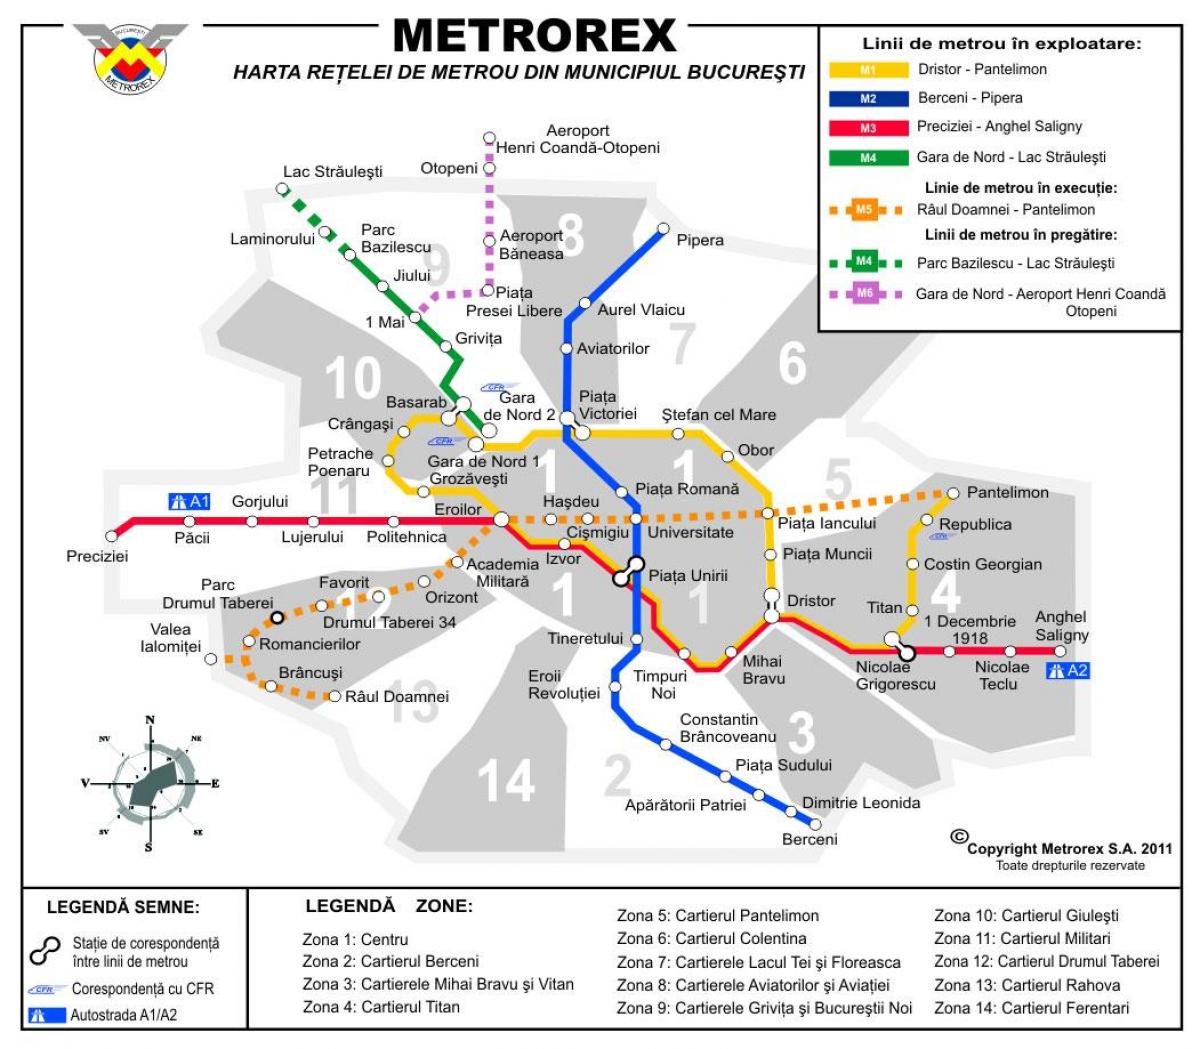 Kartta metrorex 